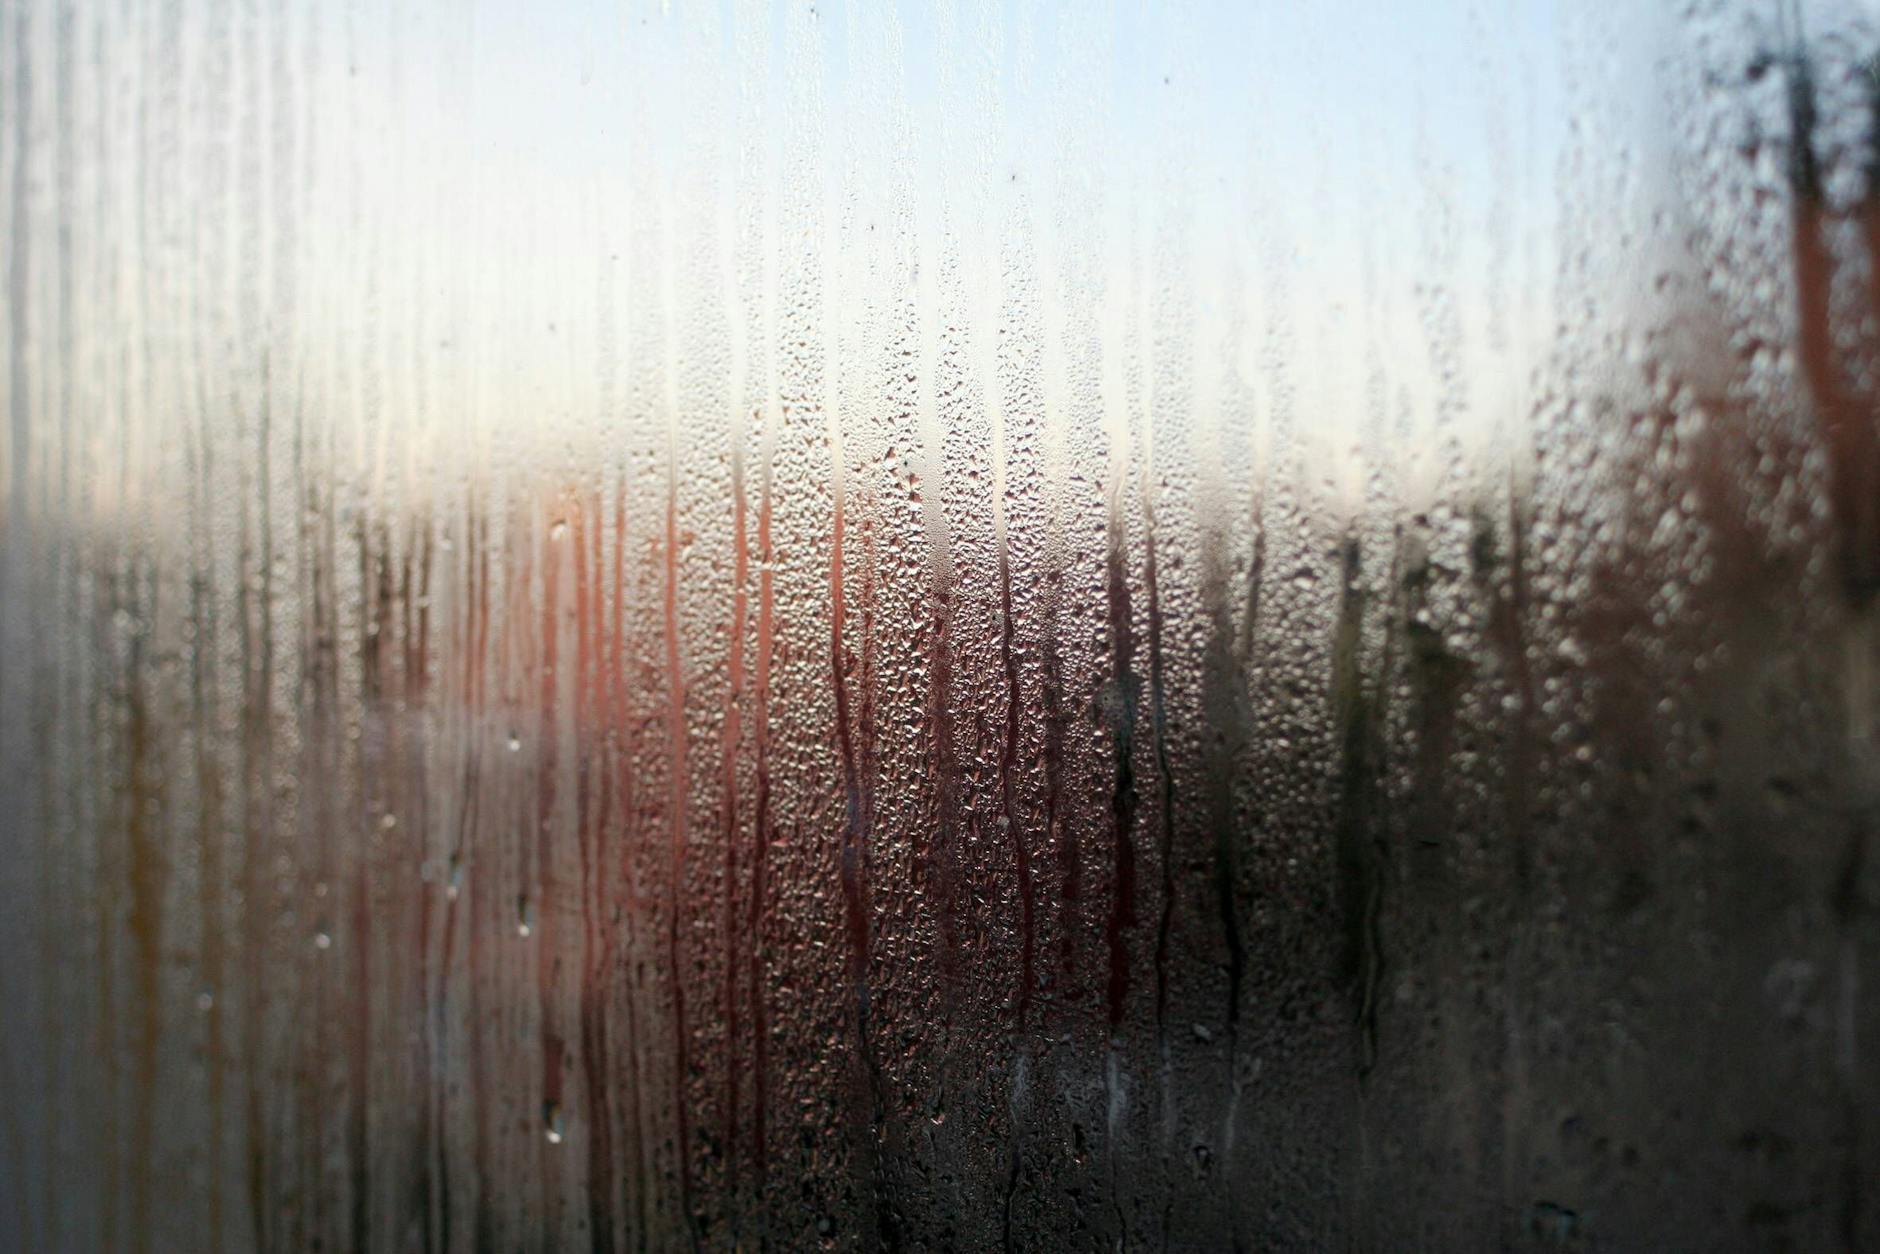 Beschlagene Fenster im Winter: Fünf geniale Tricks und Tipps gegen  Kondenswasser an den Scheiben!